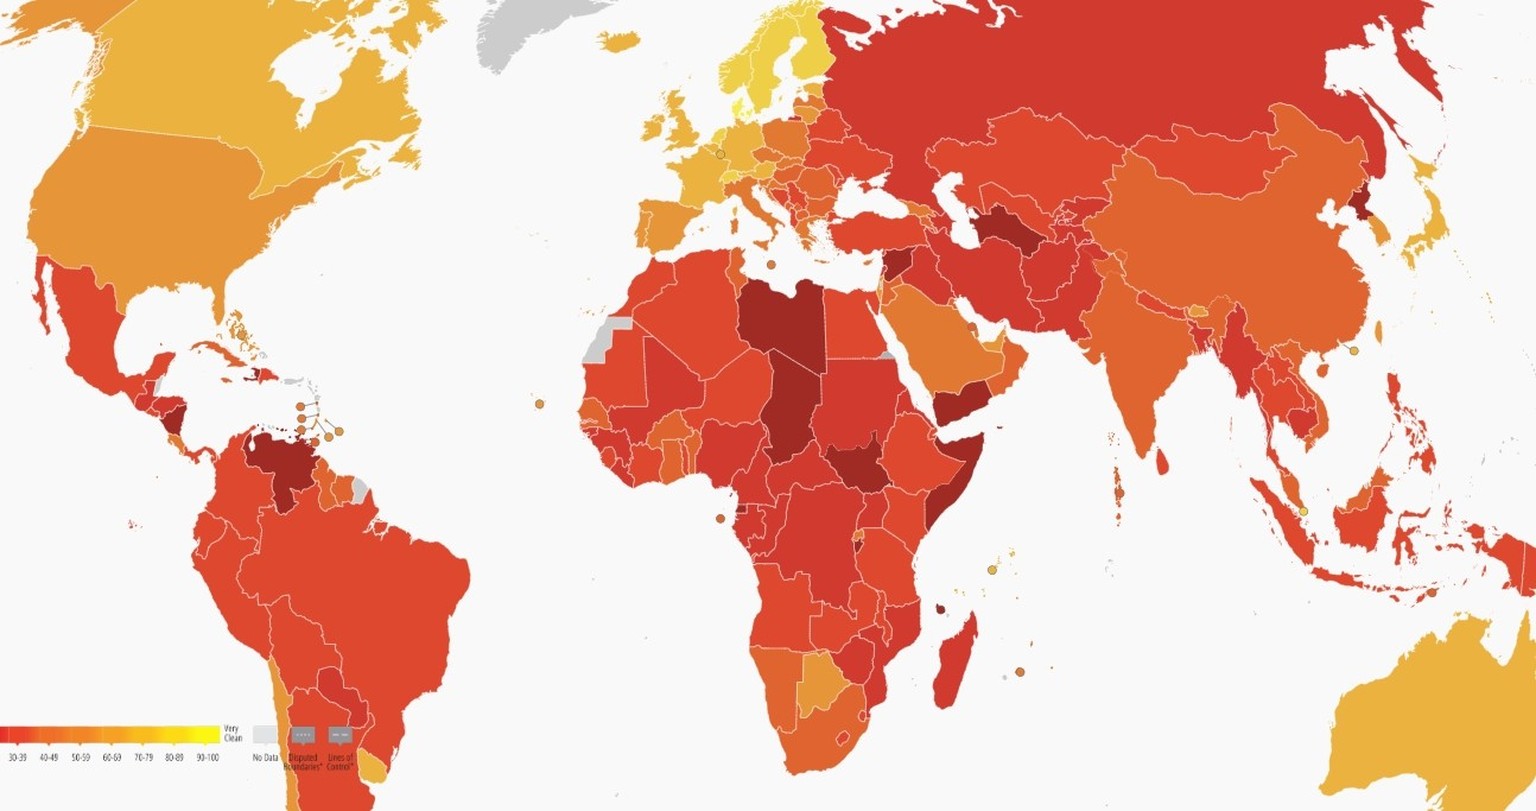 Karte zum Korruptionsindex 2022 von Tranparency
https://www.transparency.org/en/cpi/2022